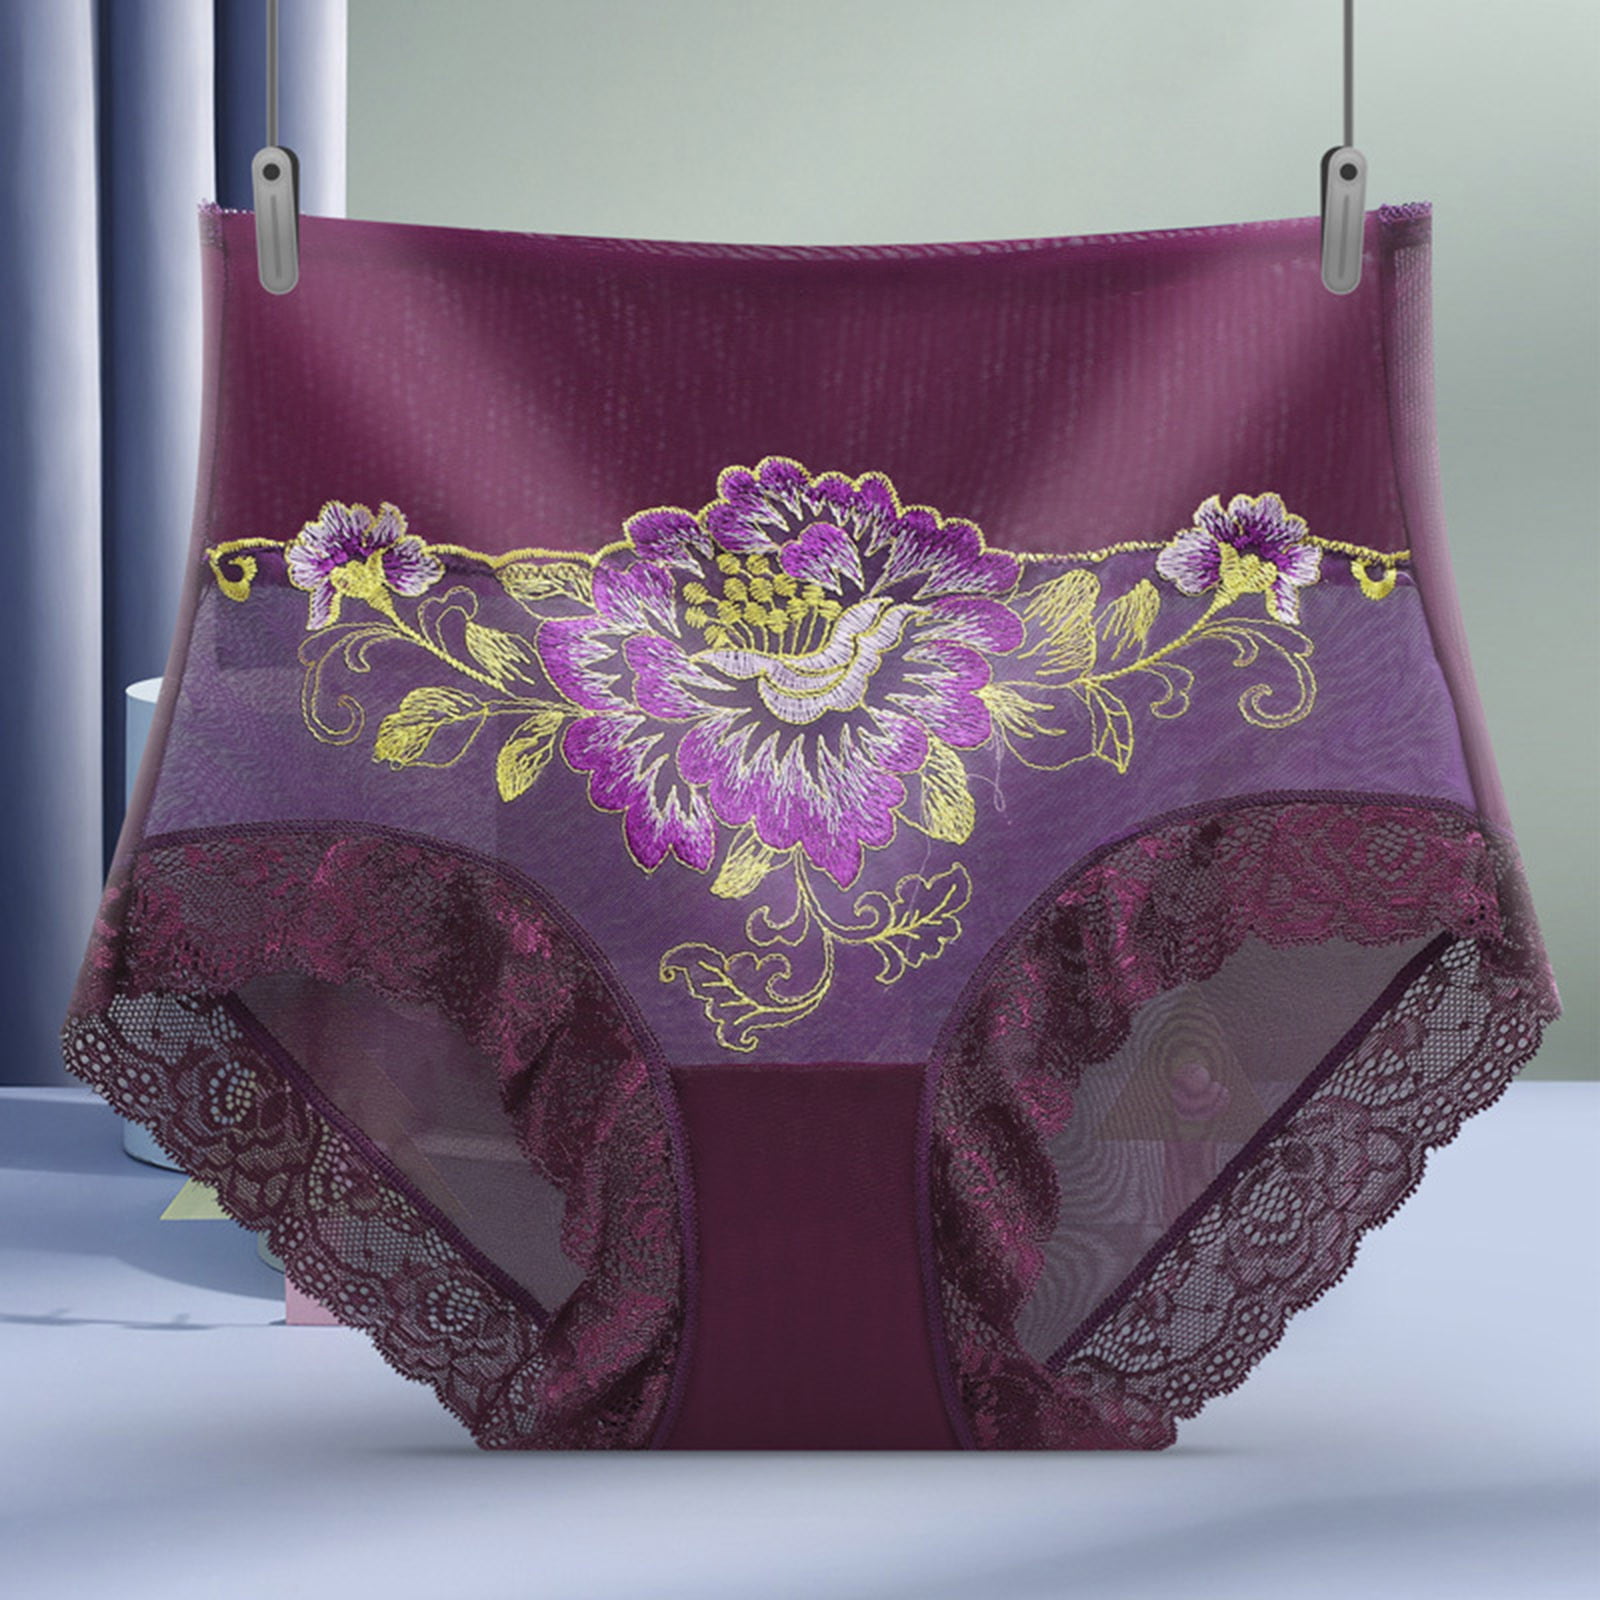 Yingbao M L XL 2XL 3XL Floral Print Panties Woman Panty Cotton